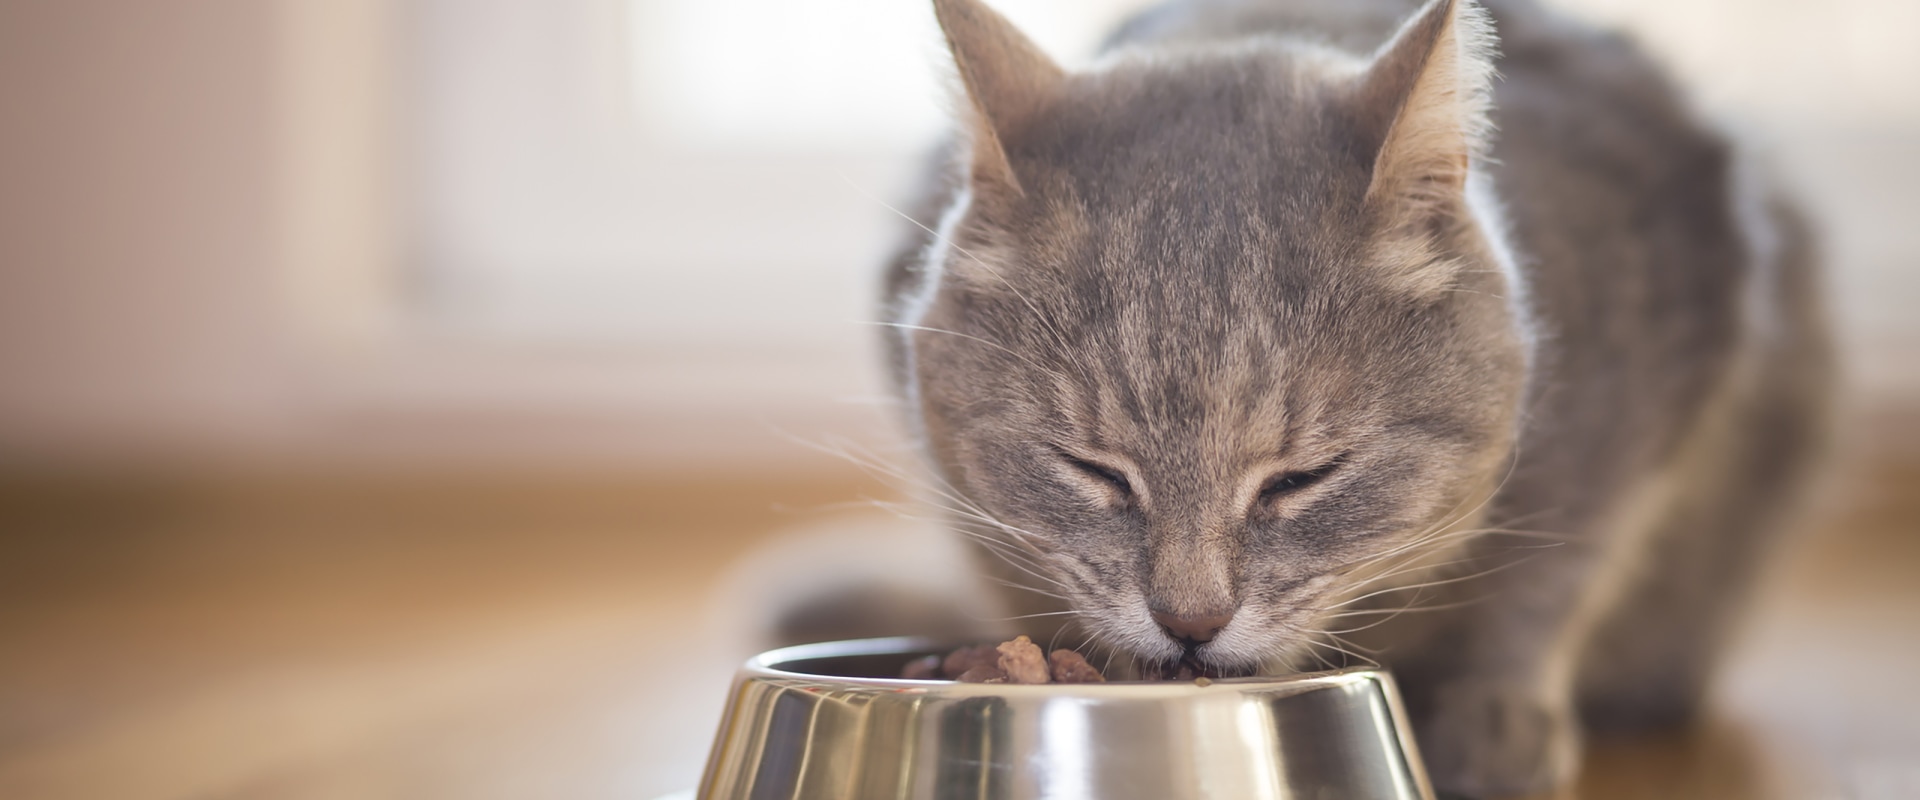 Feeding Outdoor Cats a Balanced Diet